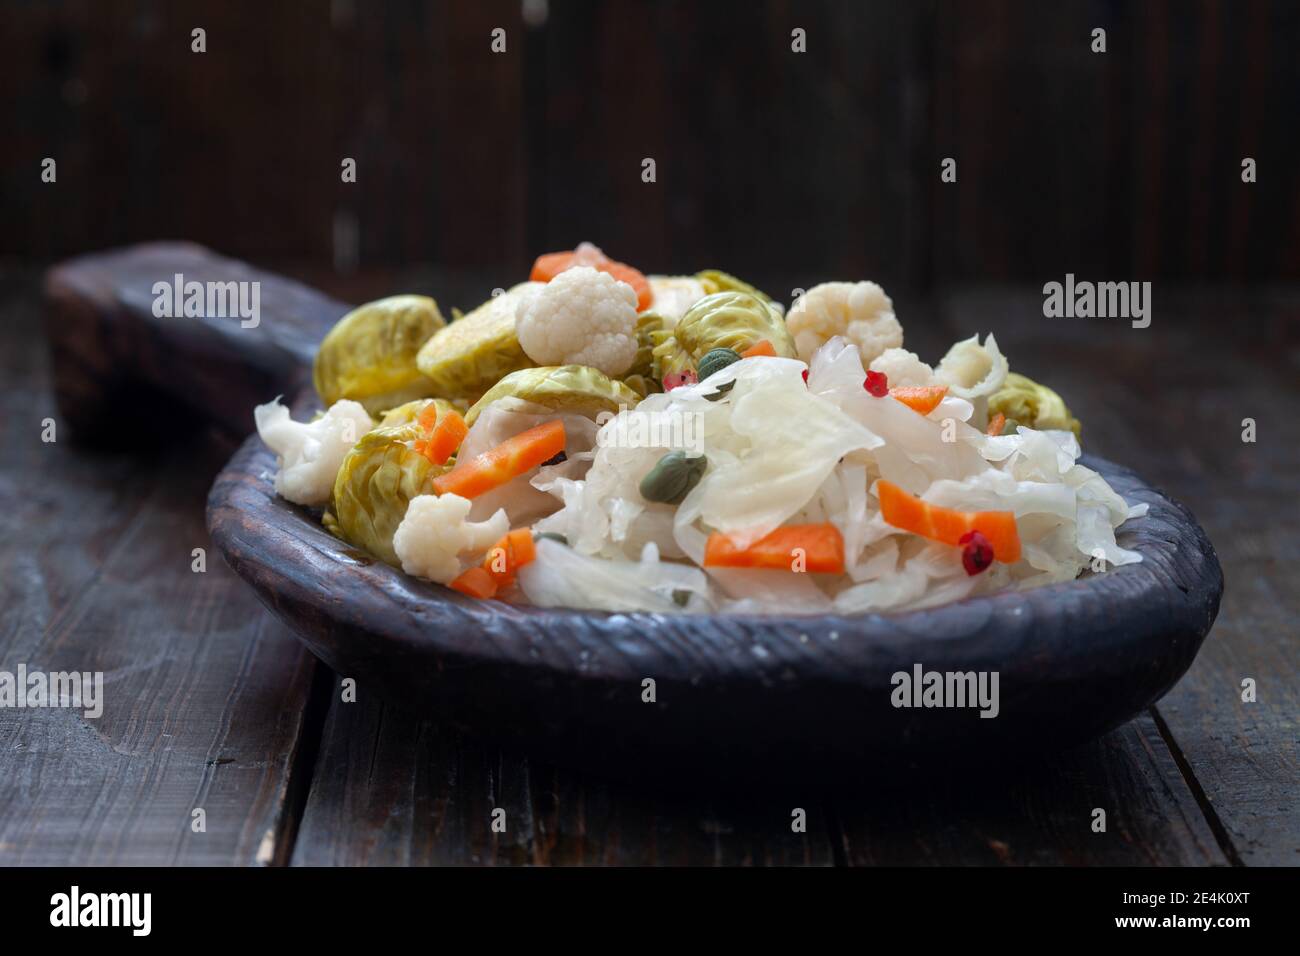 Légumes faits maison et piquetage de choucroute dans une assiette en bois rustique. Nourriture probiotique saine pleine de vitamines. Banque D'Images